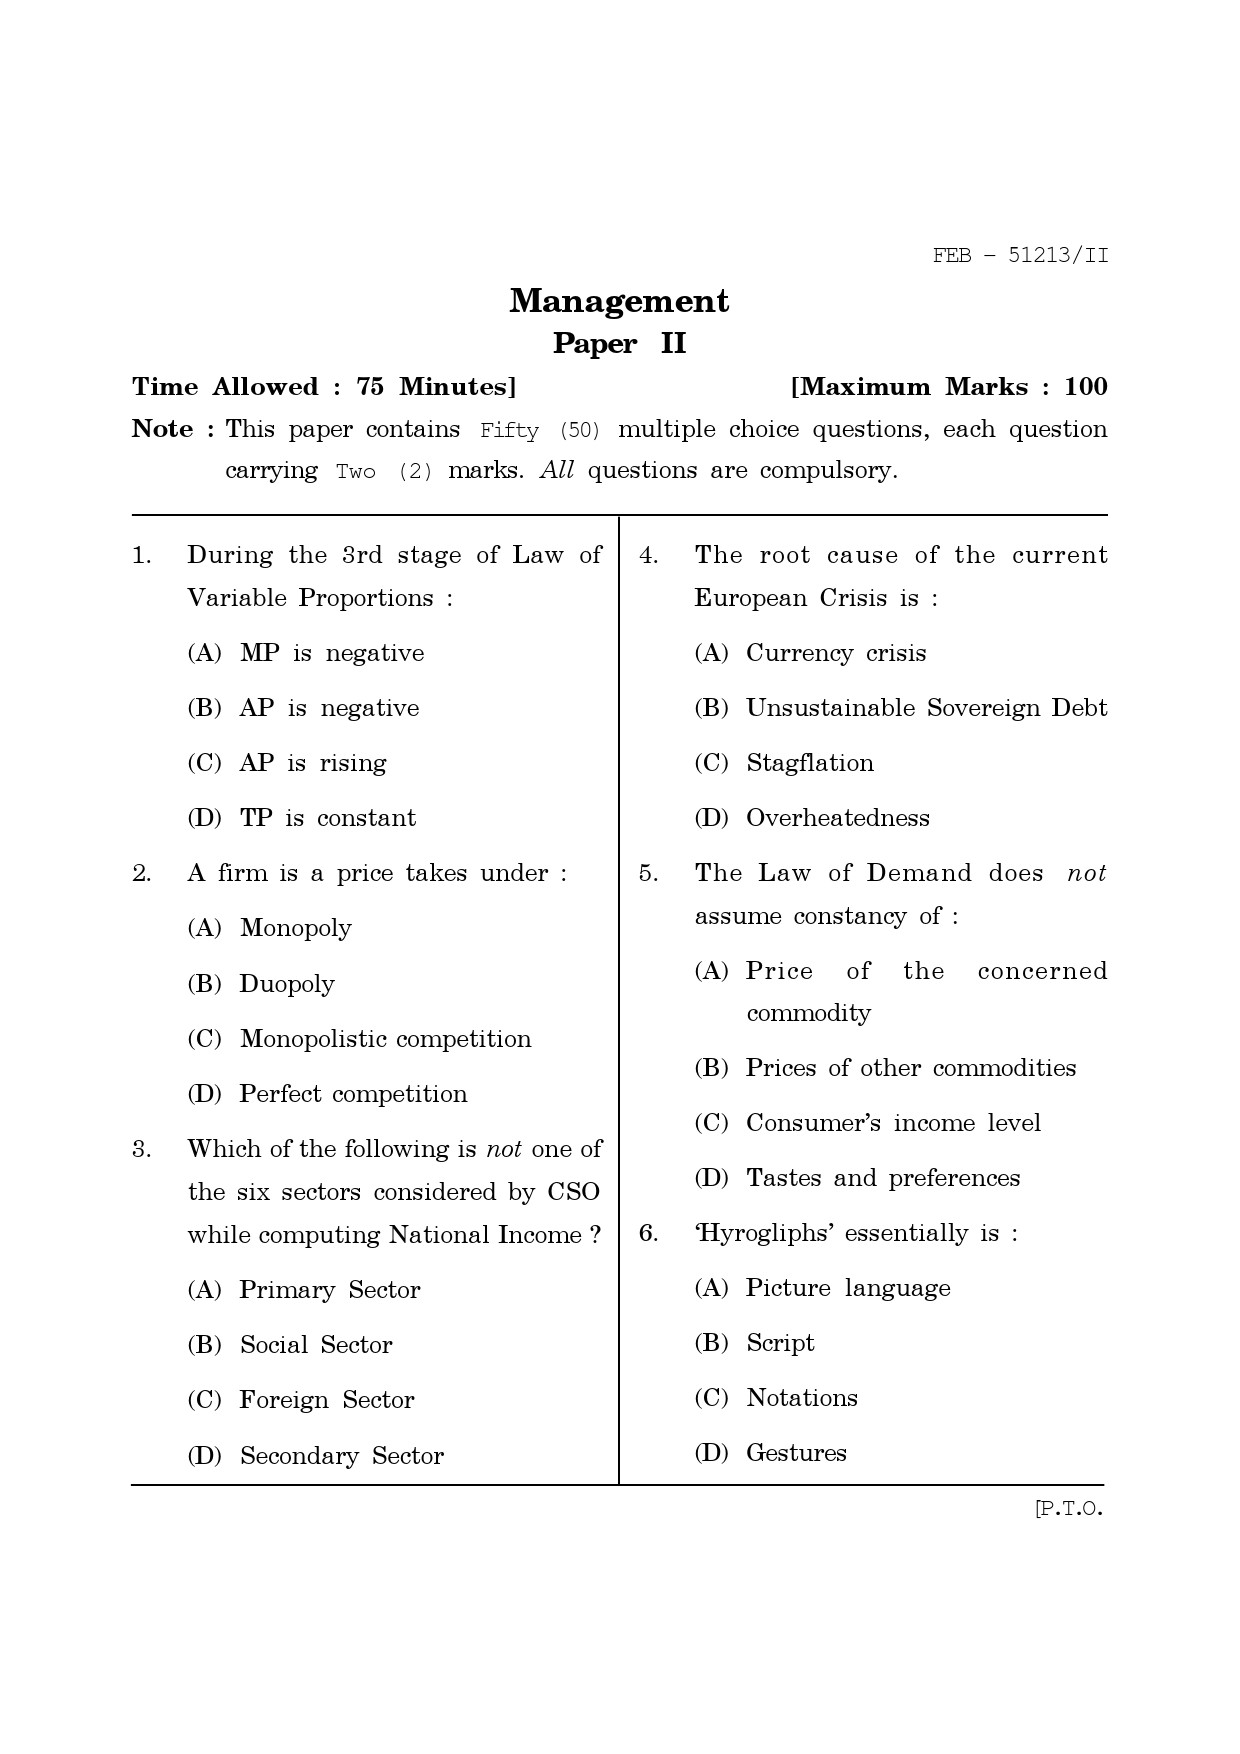 Maharashtra SET Management Question Paper II February 2013 1